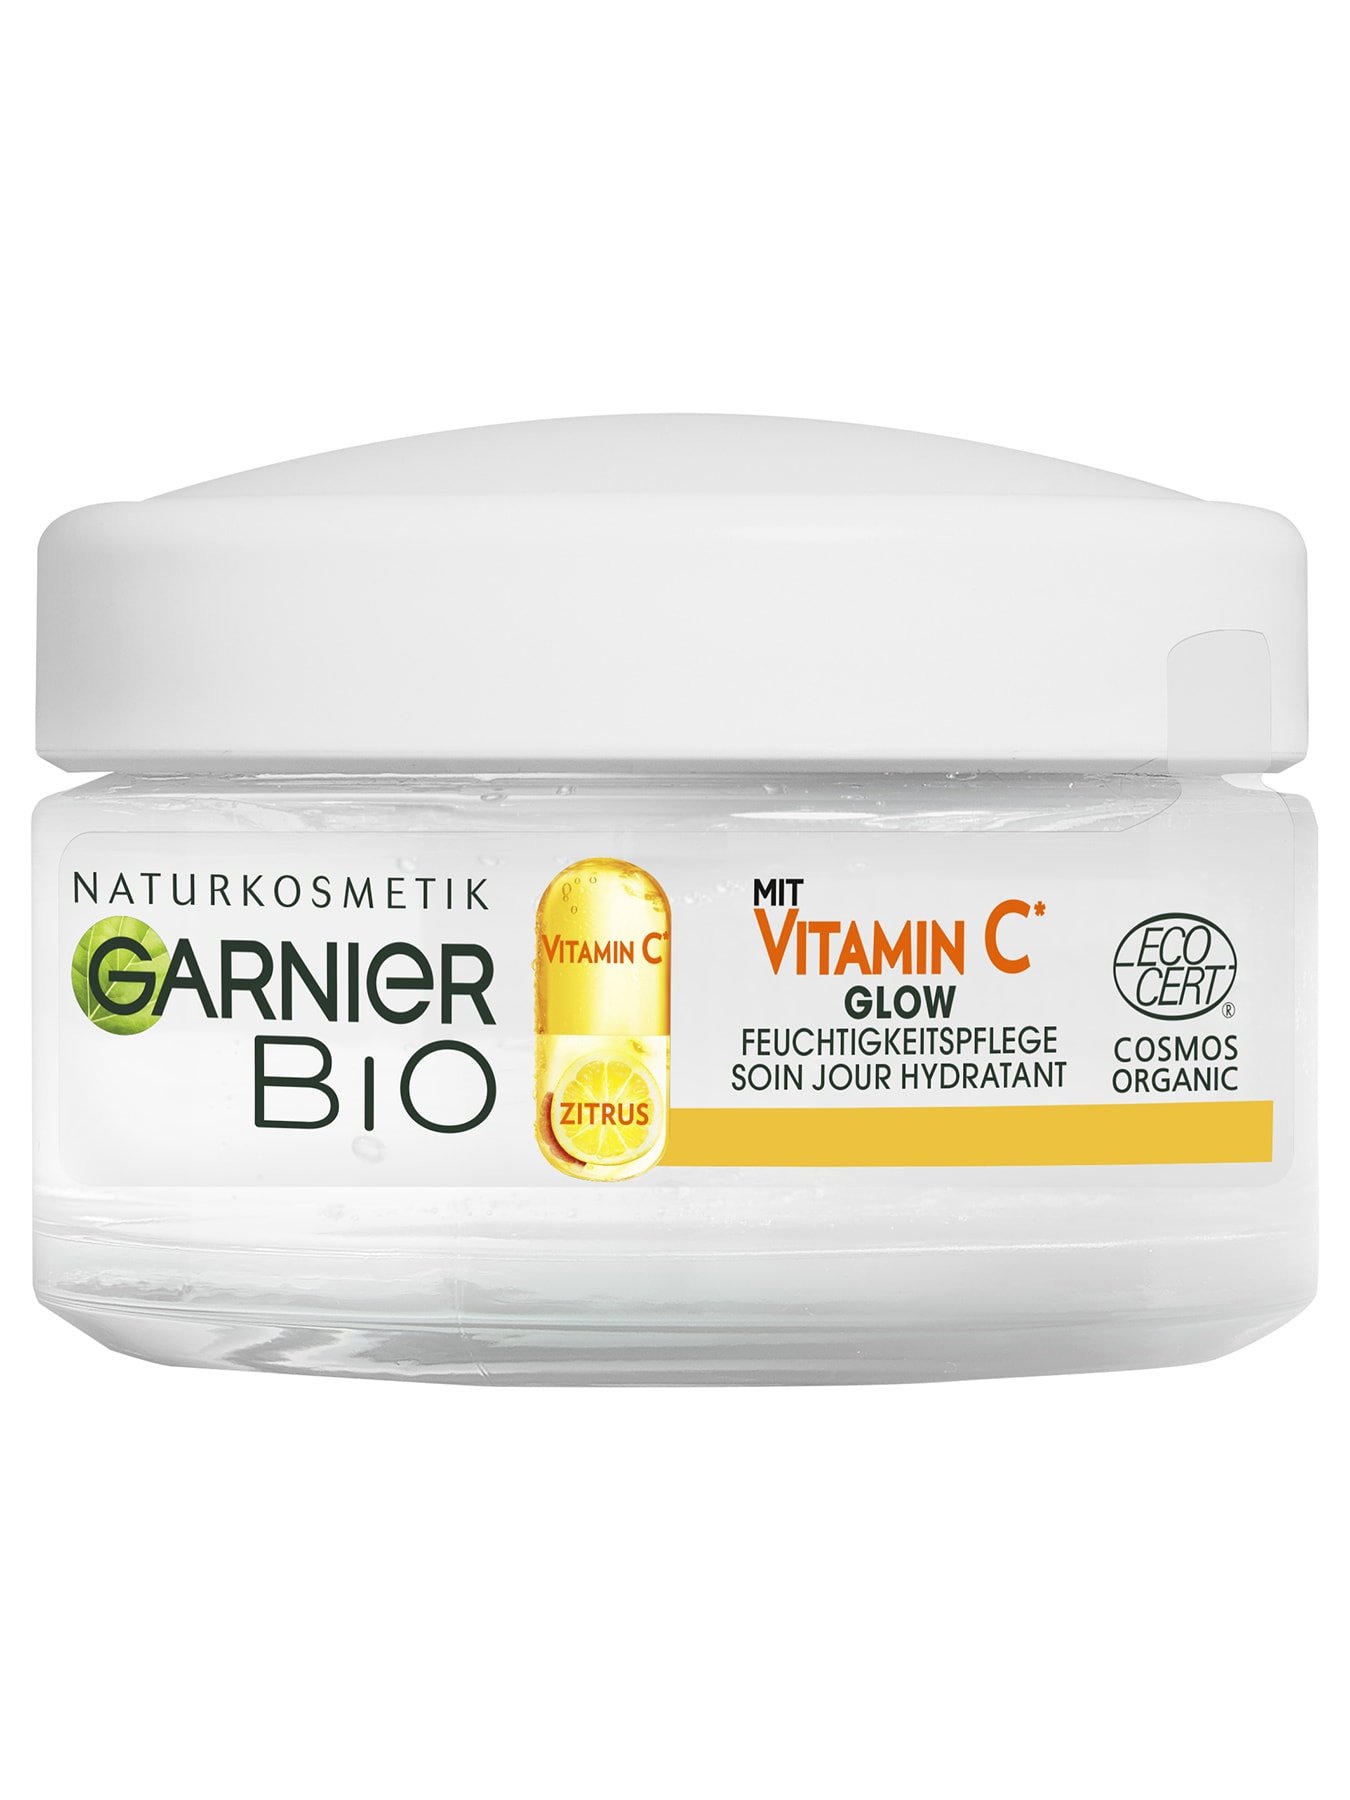 Garnier-Bio-Vitamin-C-Glow-Cream-Front